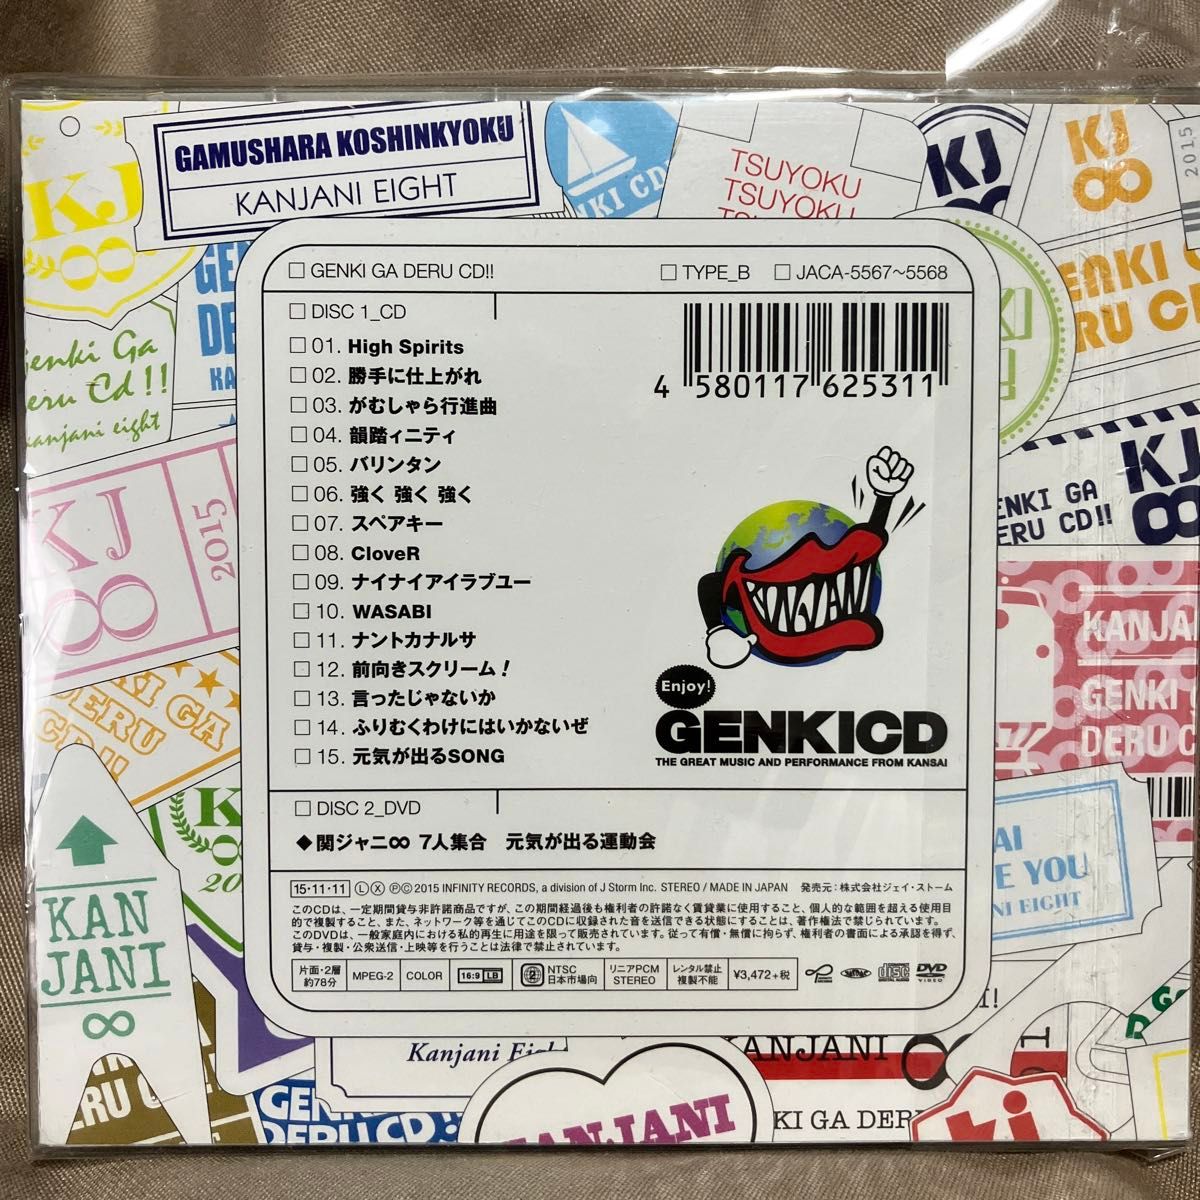 関ジャニ∞の元気が出るCD!! (初回限定盤B) (DVD付)